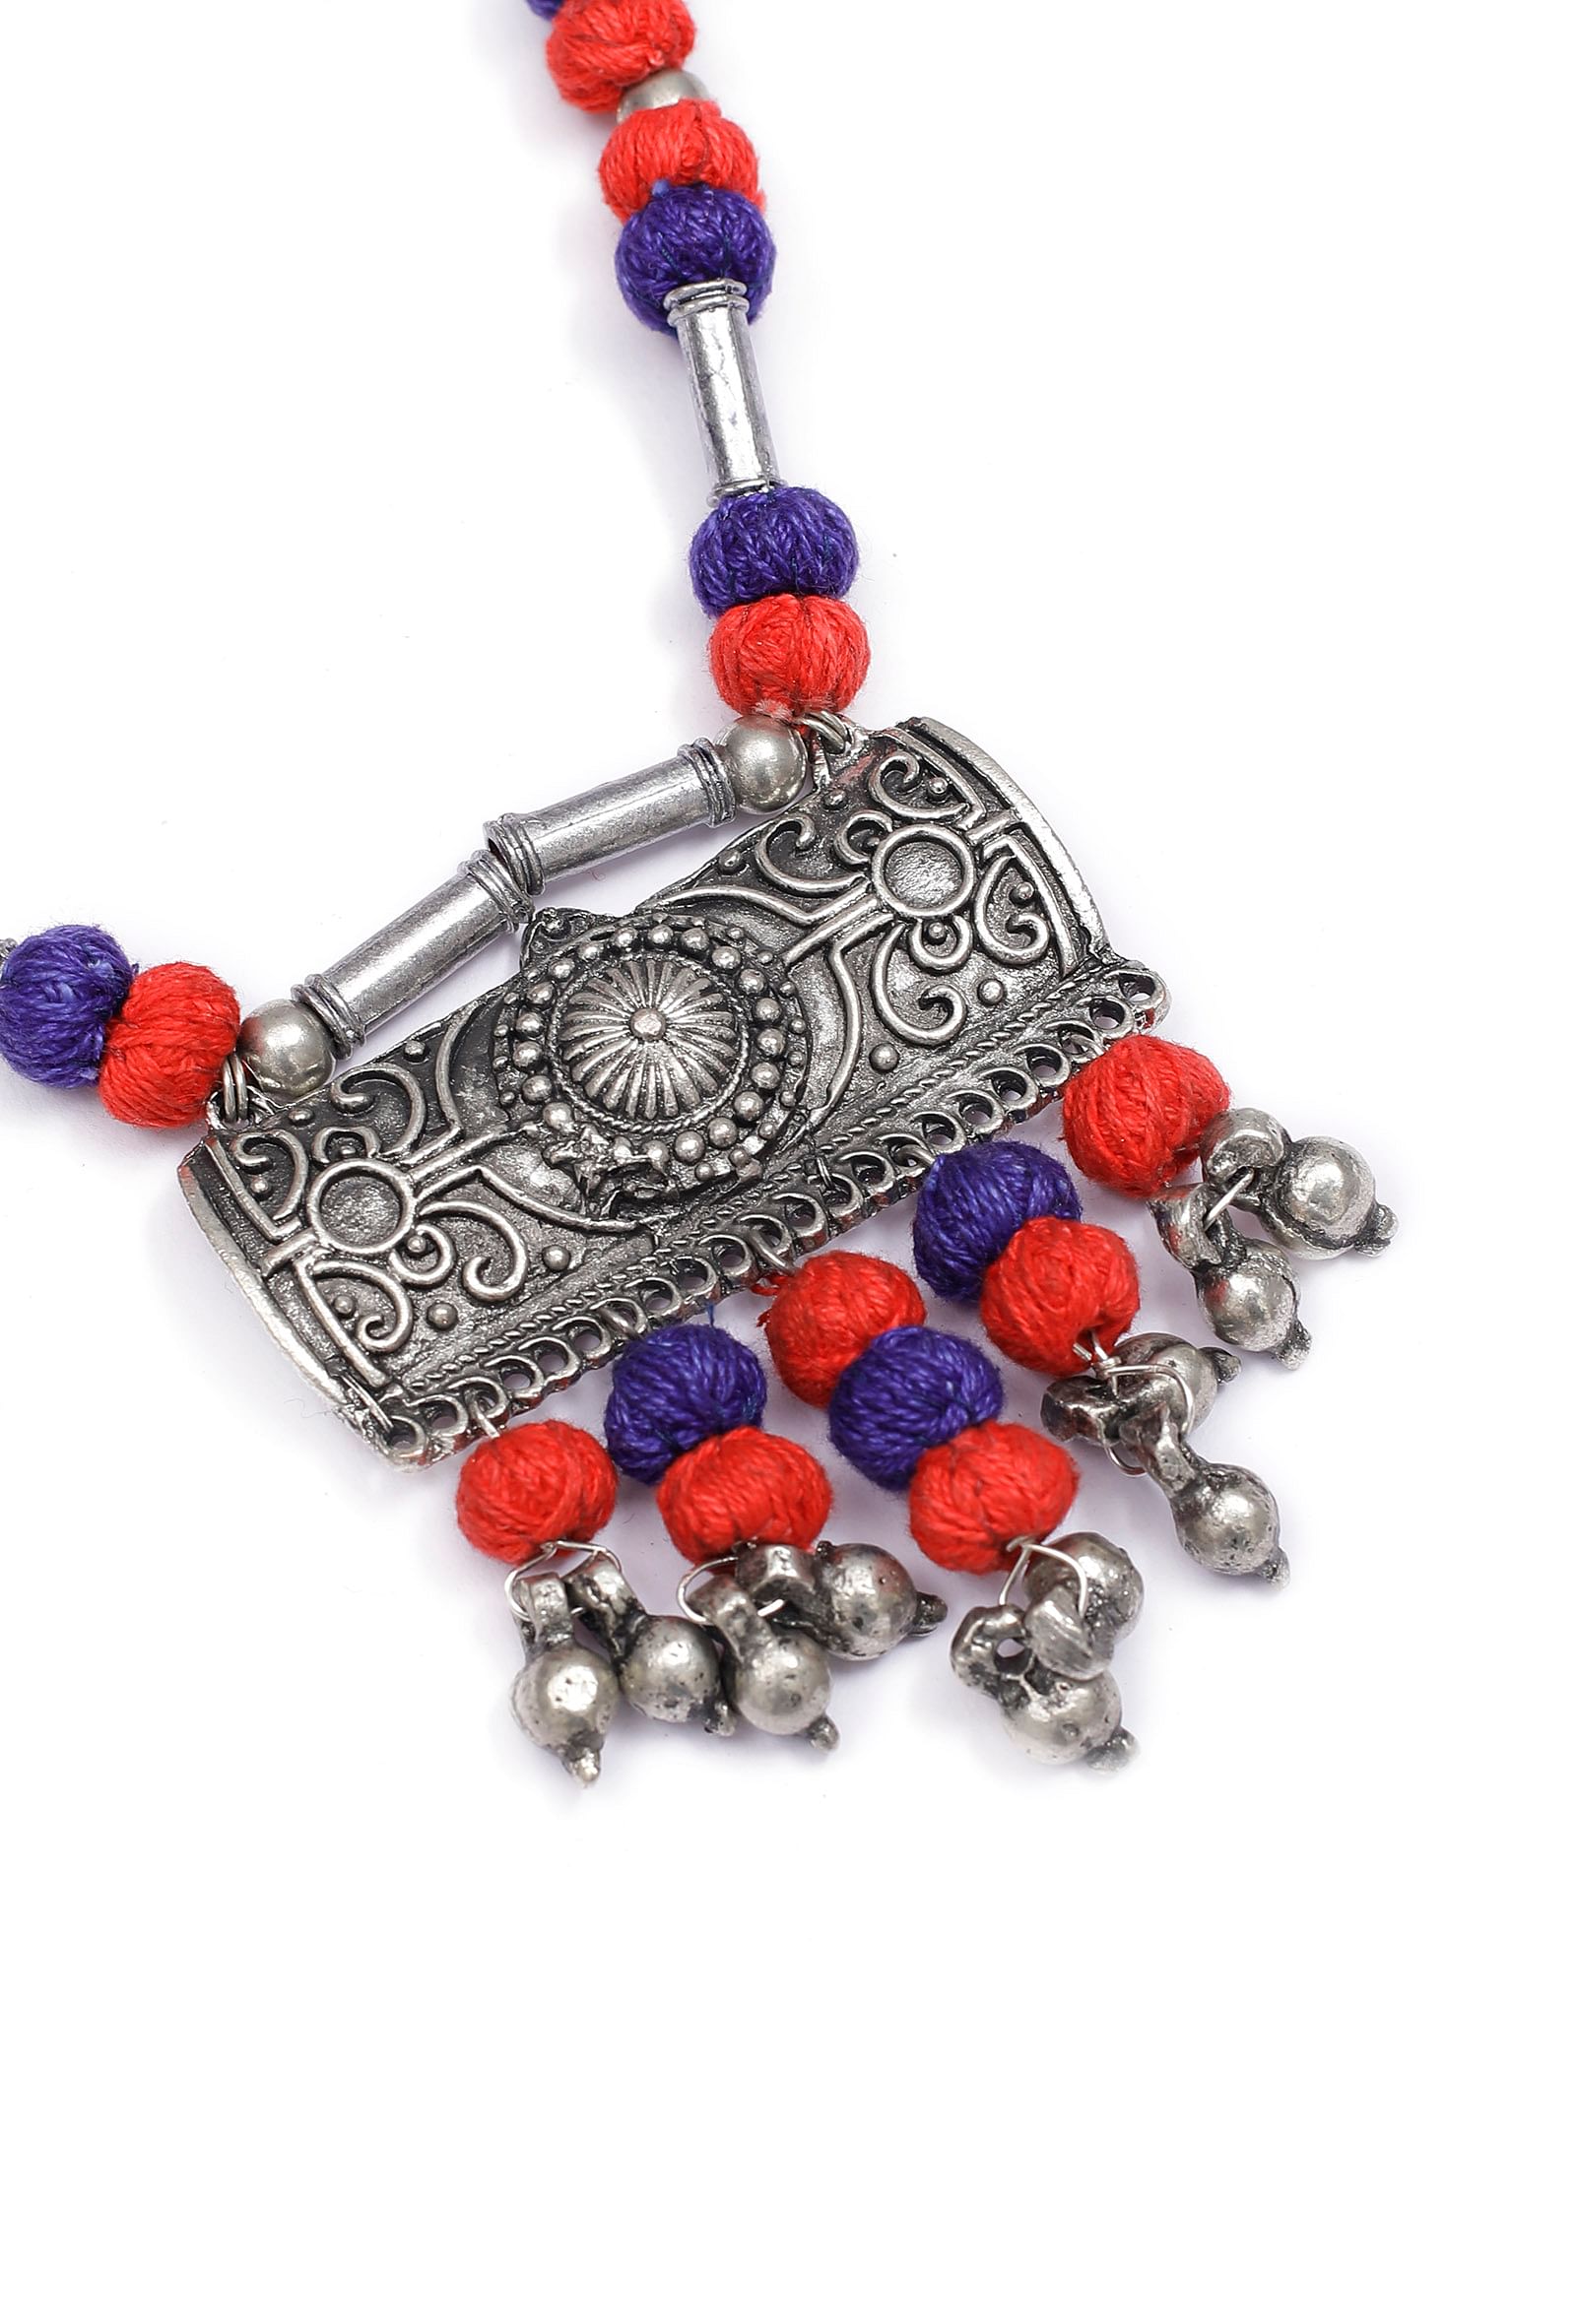 Narangi Orange and Purple Tribal Necklace